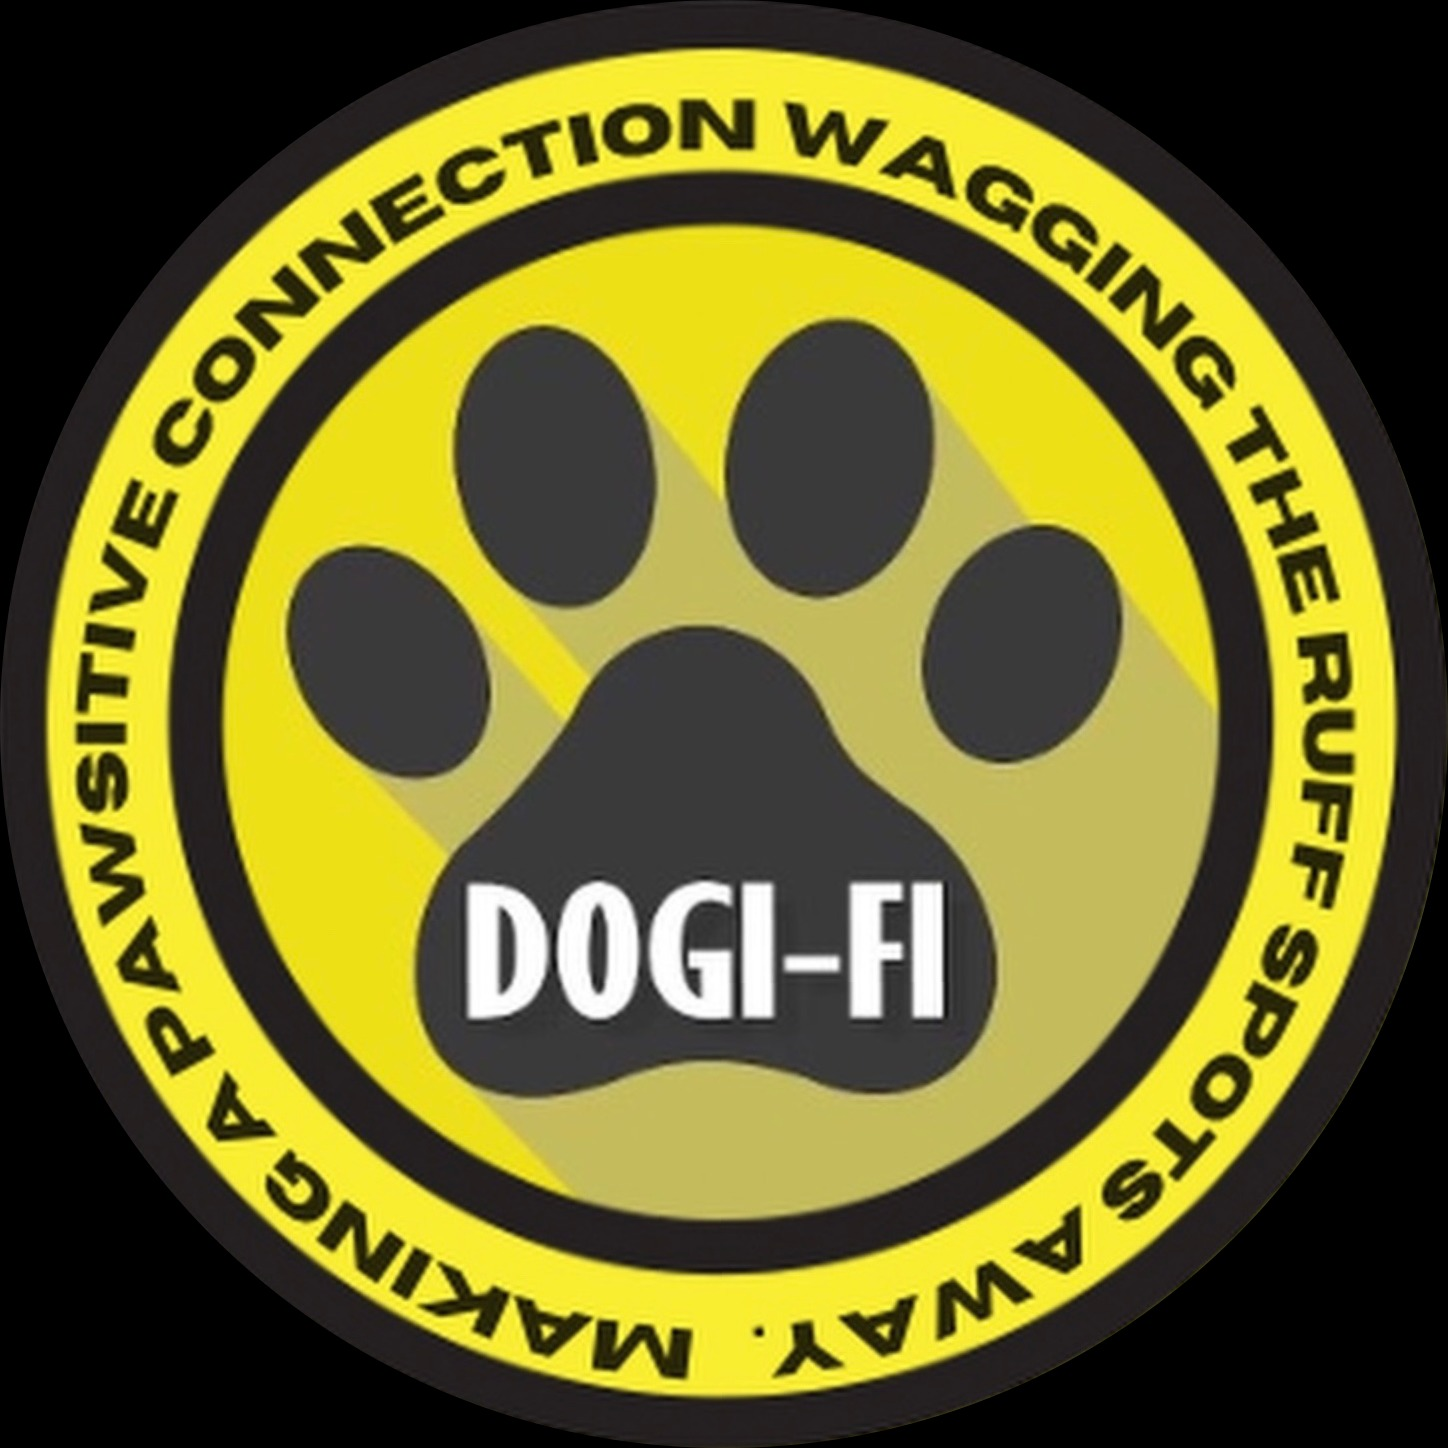 Dogifi Dog Training - Pompano Beach, FL 33064 - (954)865-5390 | ShowMeLocal.com